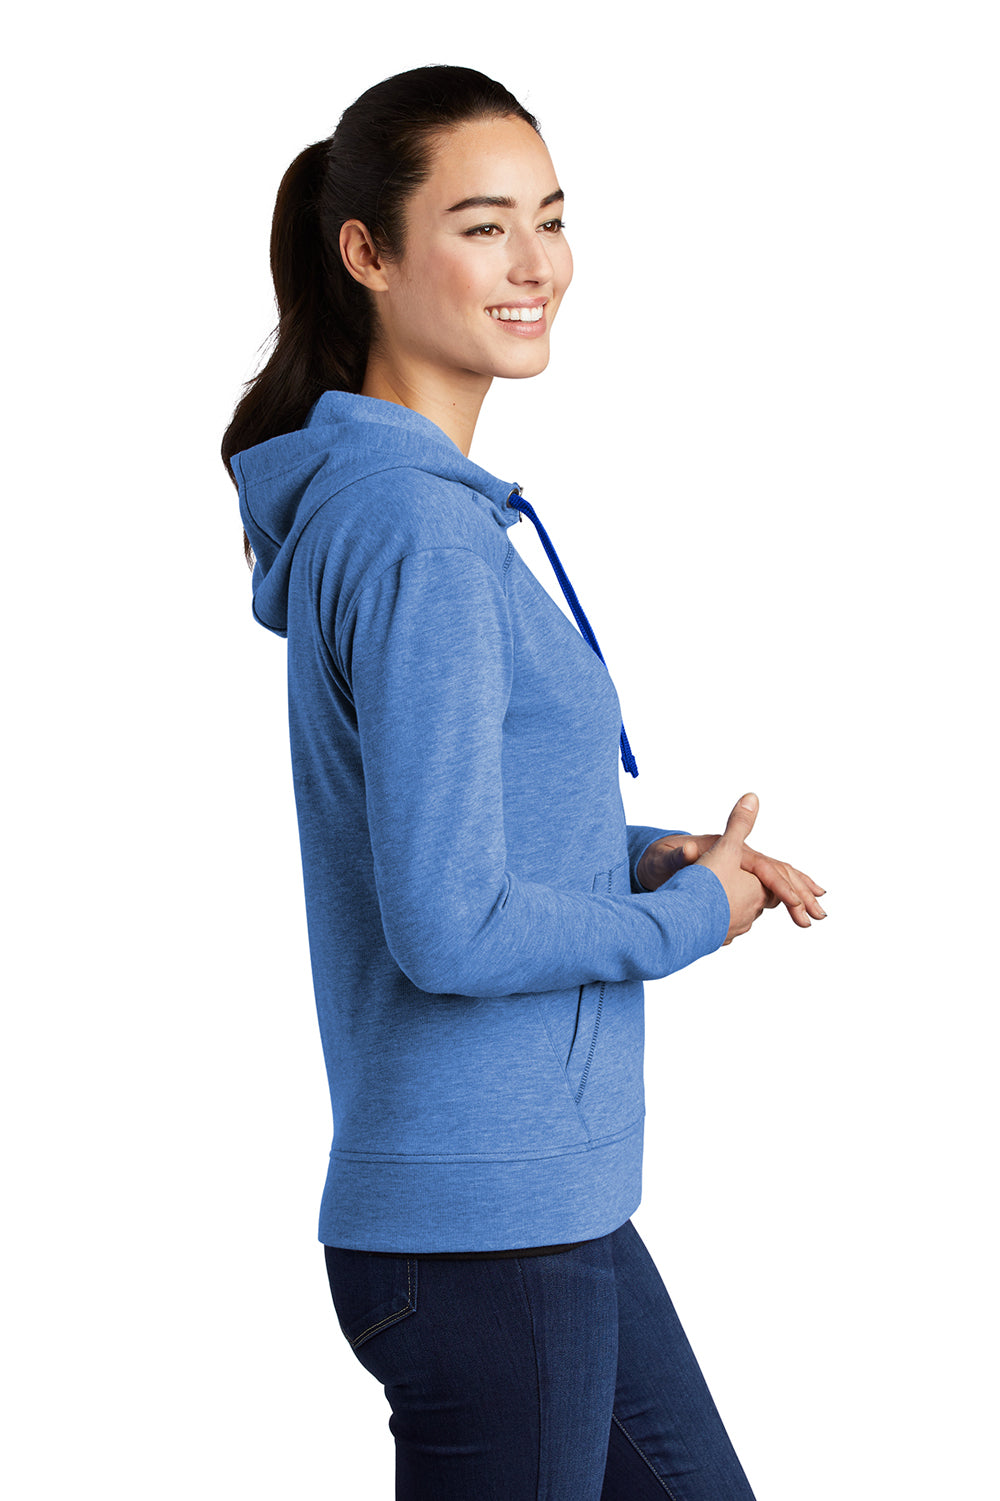 Sport-Tek Womens Moisture Wicking Fleece Full Zip Hooded Sweatshirt Hoodie Heather True Royal Blue Side